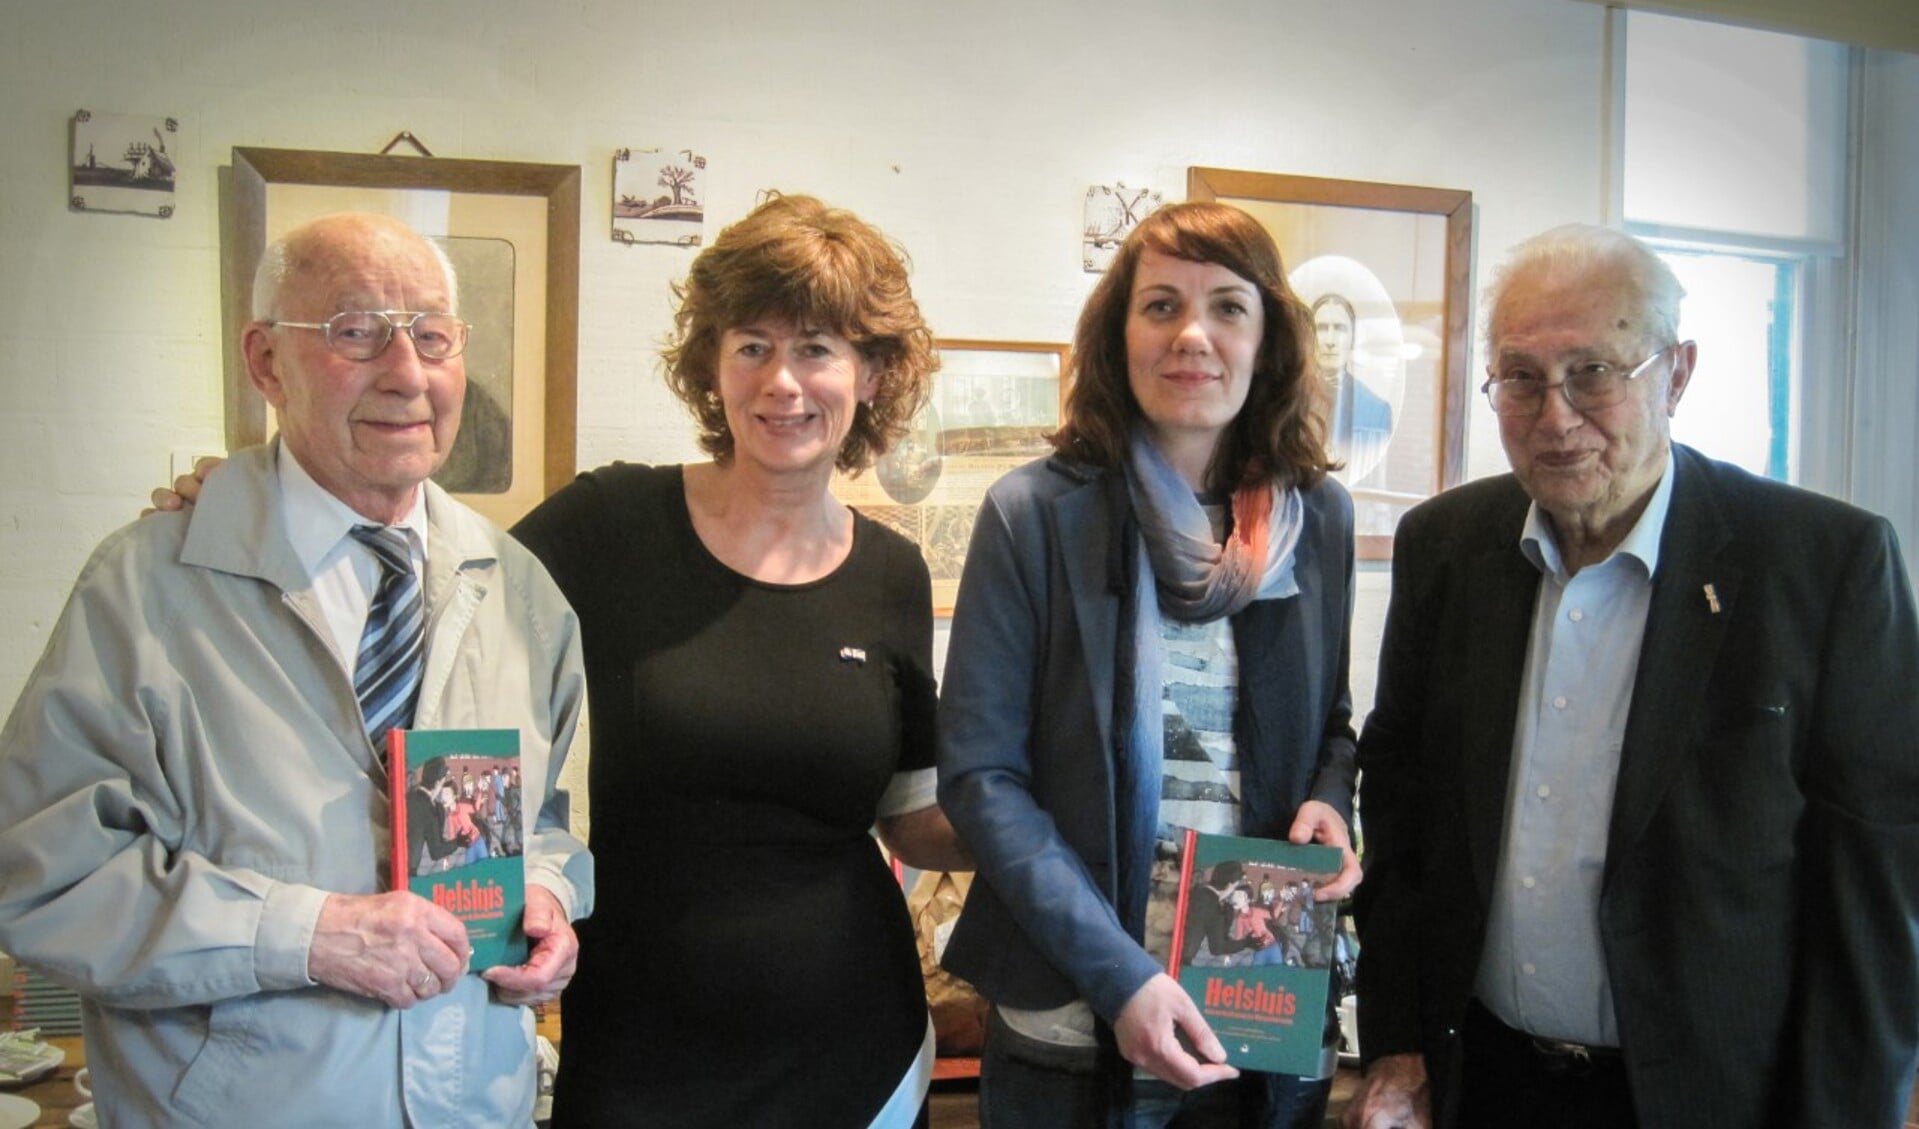 V.l.n.r. Kees Mijnster, Anja van der Starre, Judith Brinkman en Marius den Breejen na de uitreiking van het boekje 'Helsluis'.